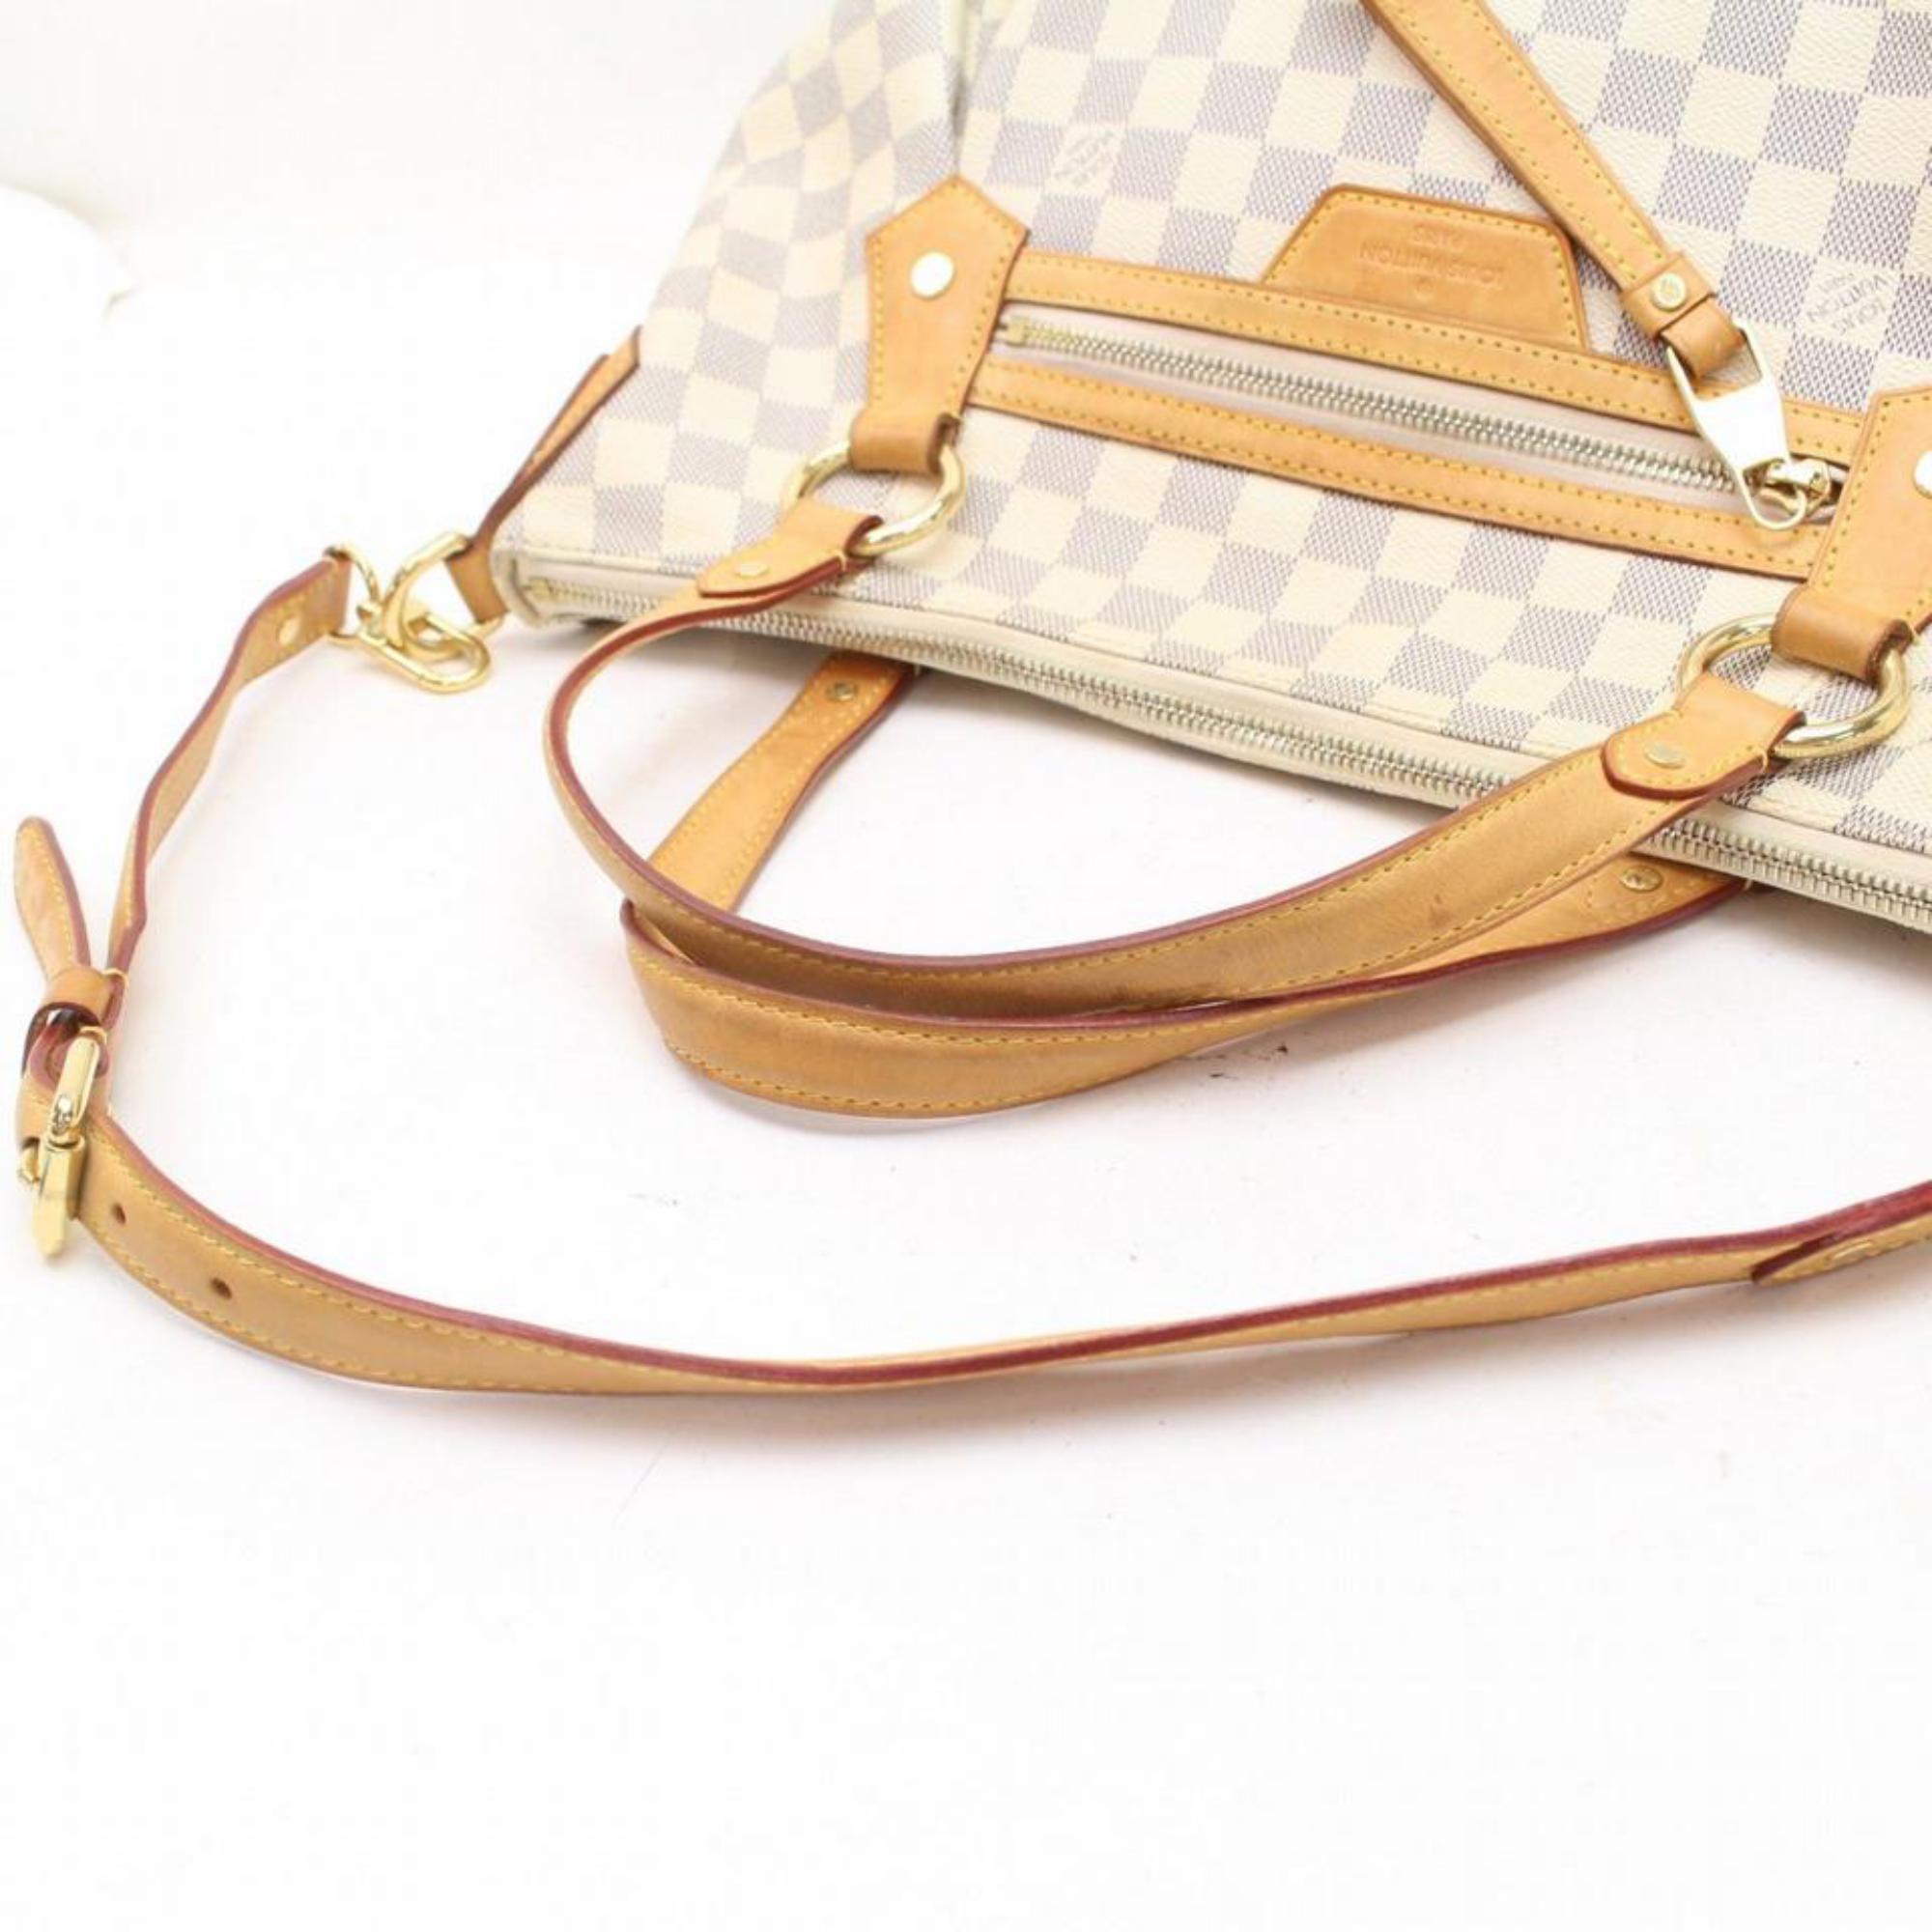 Louis Vuitton Evora Damier Azur Gm 869863 White Coated Canvas Shoulder Bag For Sale 7